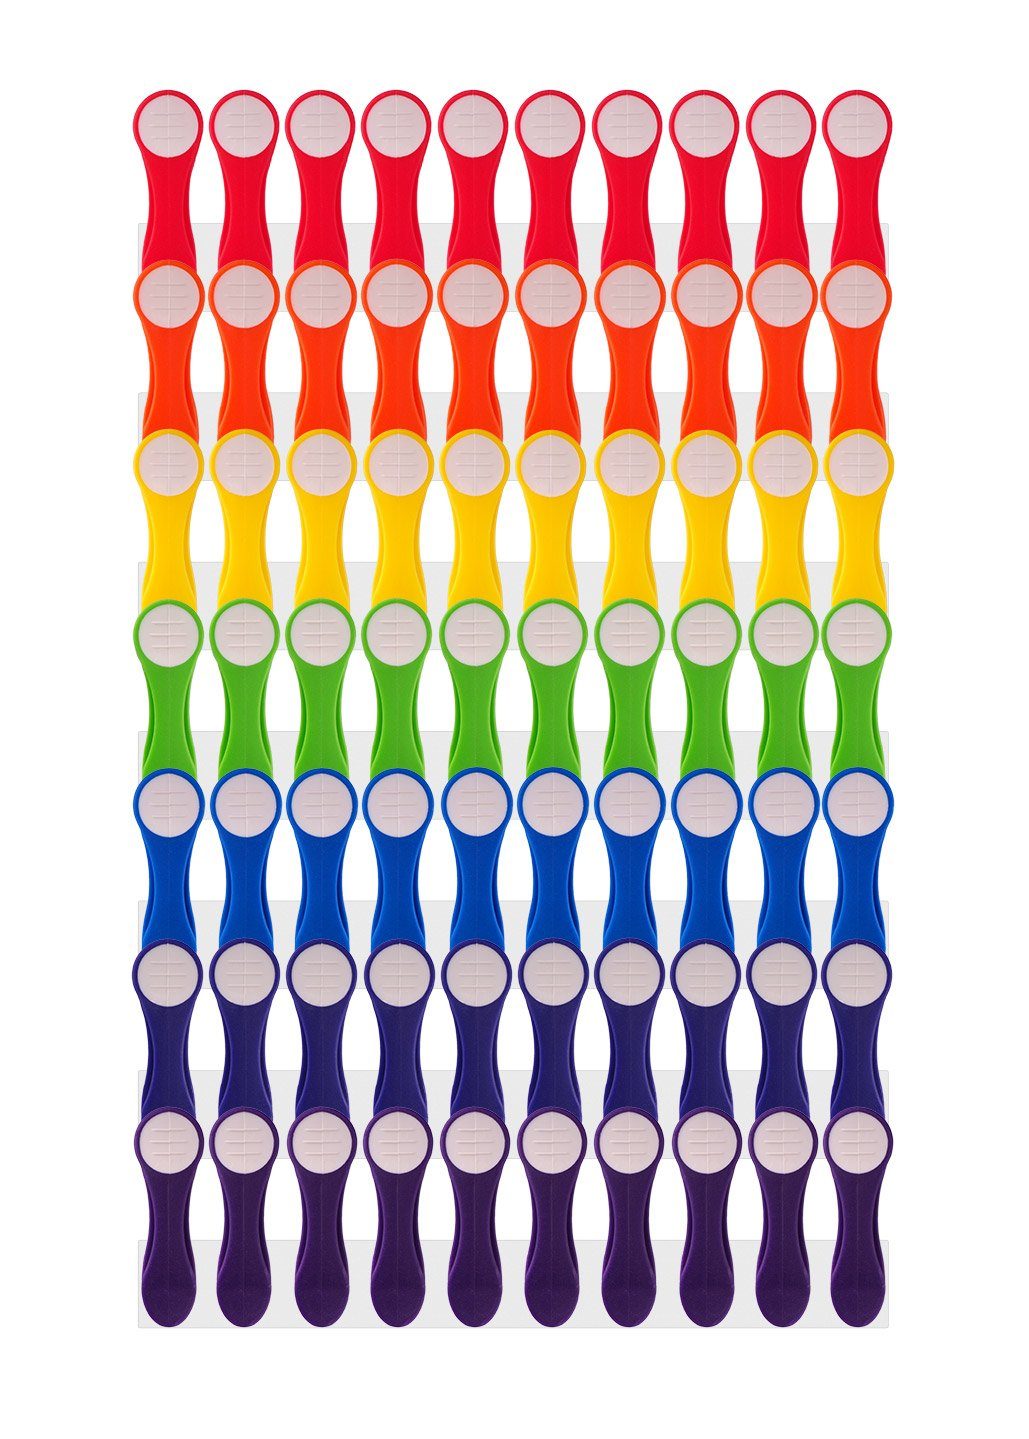 trendfinding Wäscheklammern 70 Wäscheklammern im Regenbogen Design für empfind, Unverwechselbares Design, Langlebigkeit durch neueste Klammertechnik